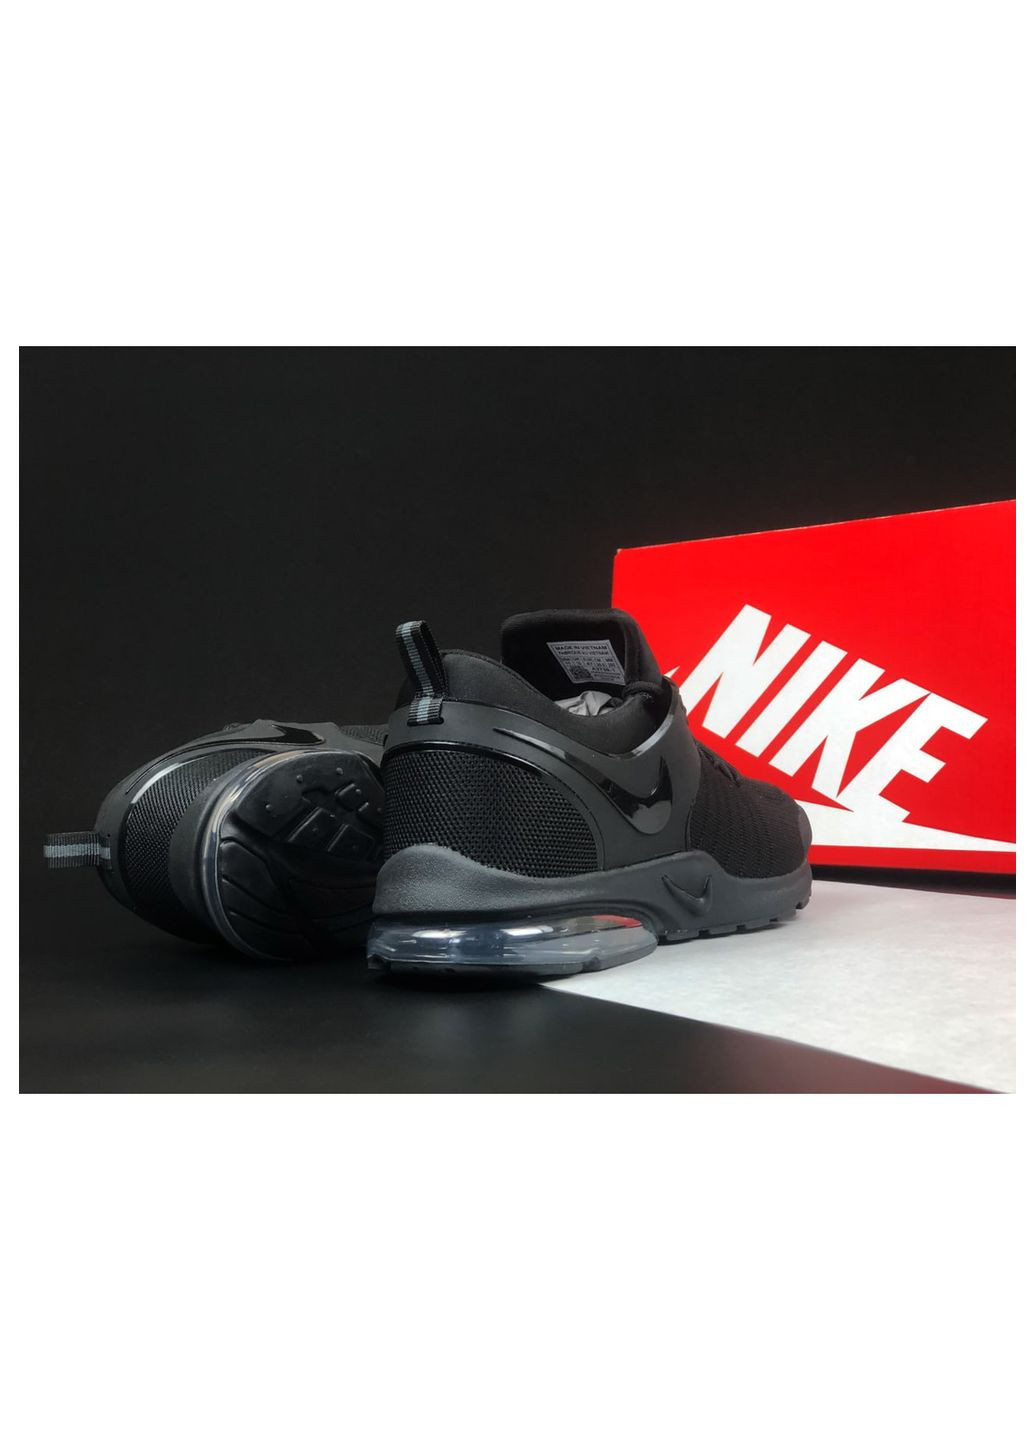 Черные демисезонные кроссовки мужские, вьетнам Nike Air Presto